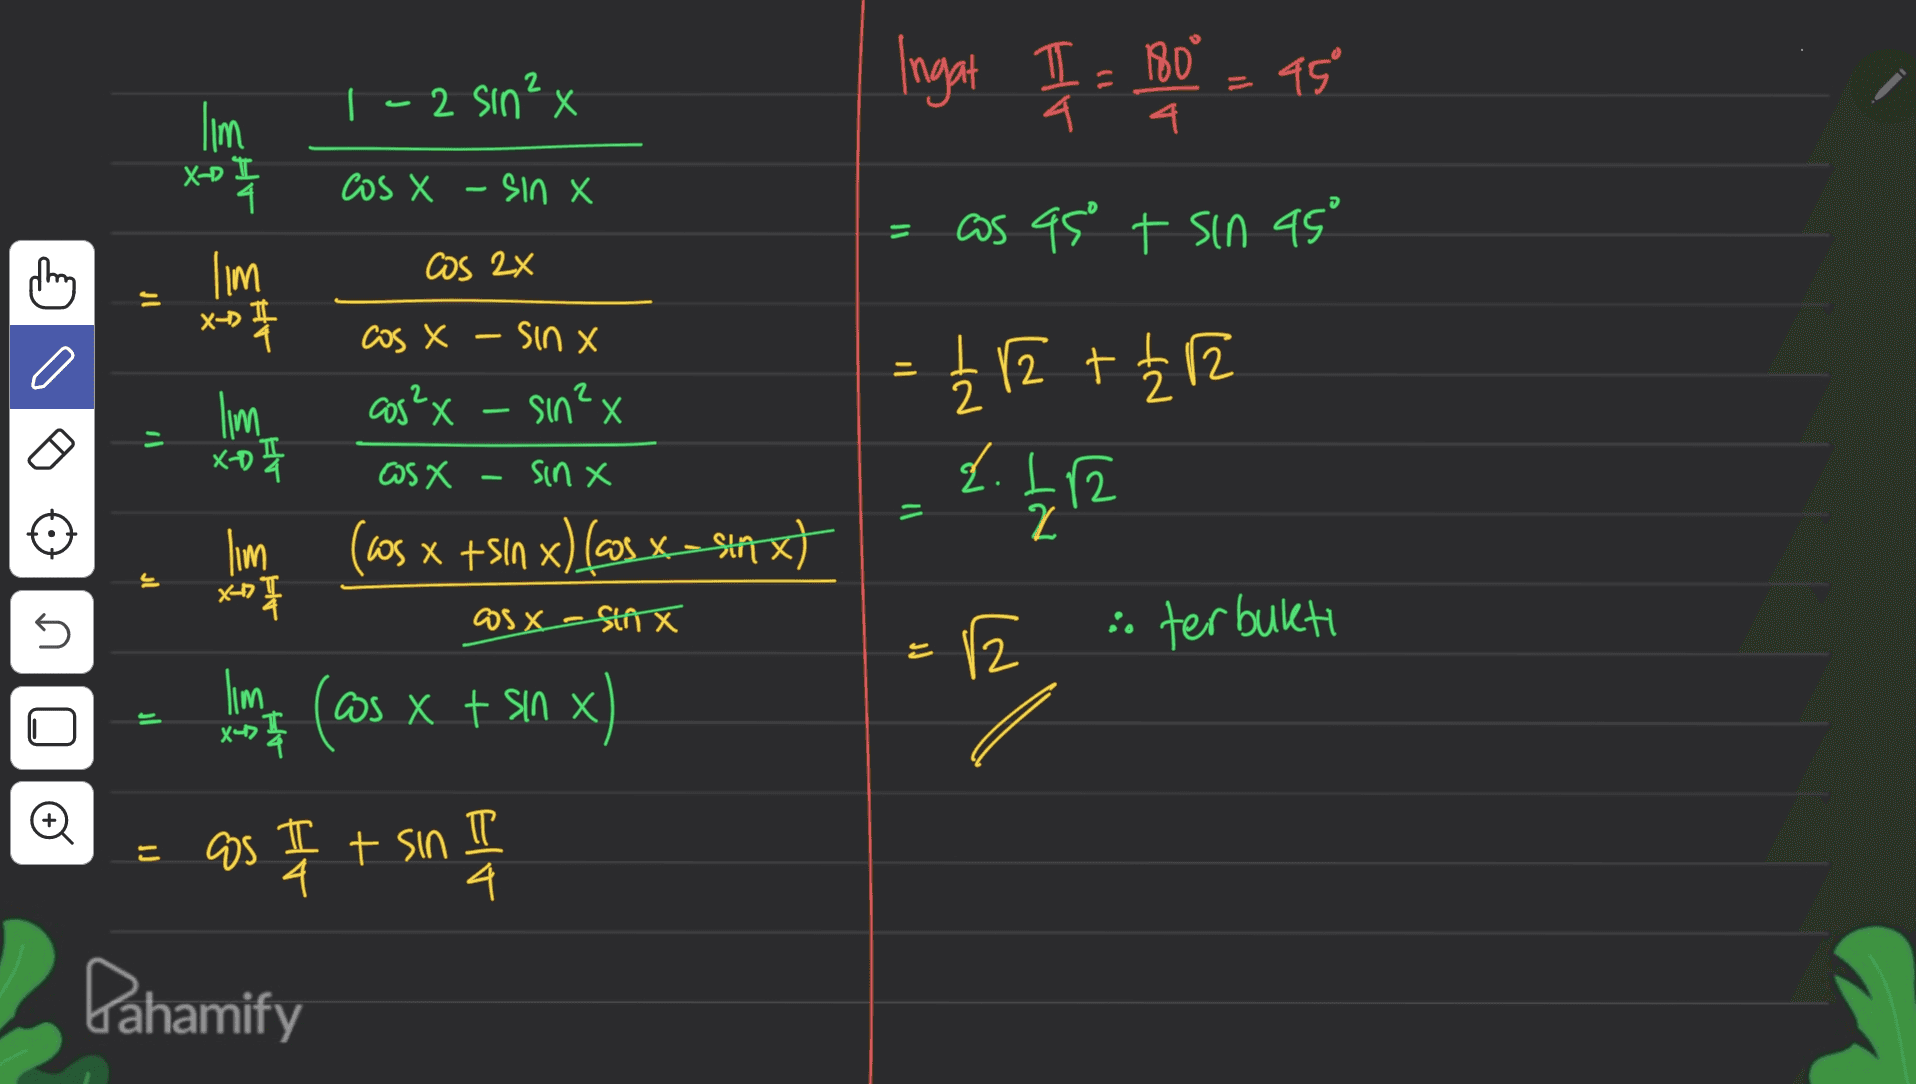 Ingat I = 180° = 45 ° - 2 sinx a 4. lim o to X-D cos X -sin X = as as t sin 45° -- will cos 2x - X) #r cos X - sinx cos²x sin²x = { 12 +12 - il lim xo I o OS X sinx d. 12 - = 2 lim * 手 ws x +sin x) [cs x-staxt الى X-17 5 as X-sinx i terbukti po Zl limt (@s x t sin el iJ + sin x) as I + sin II Pahamify 교 4 